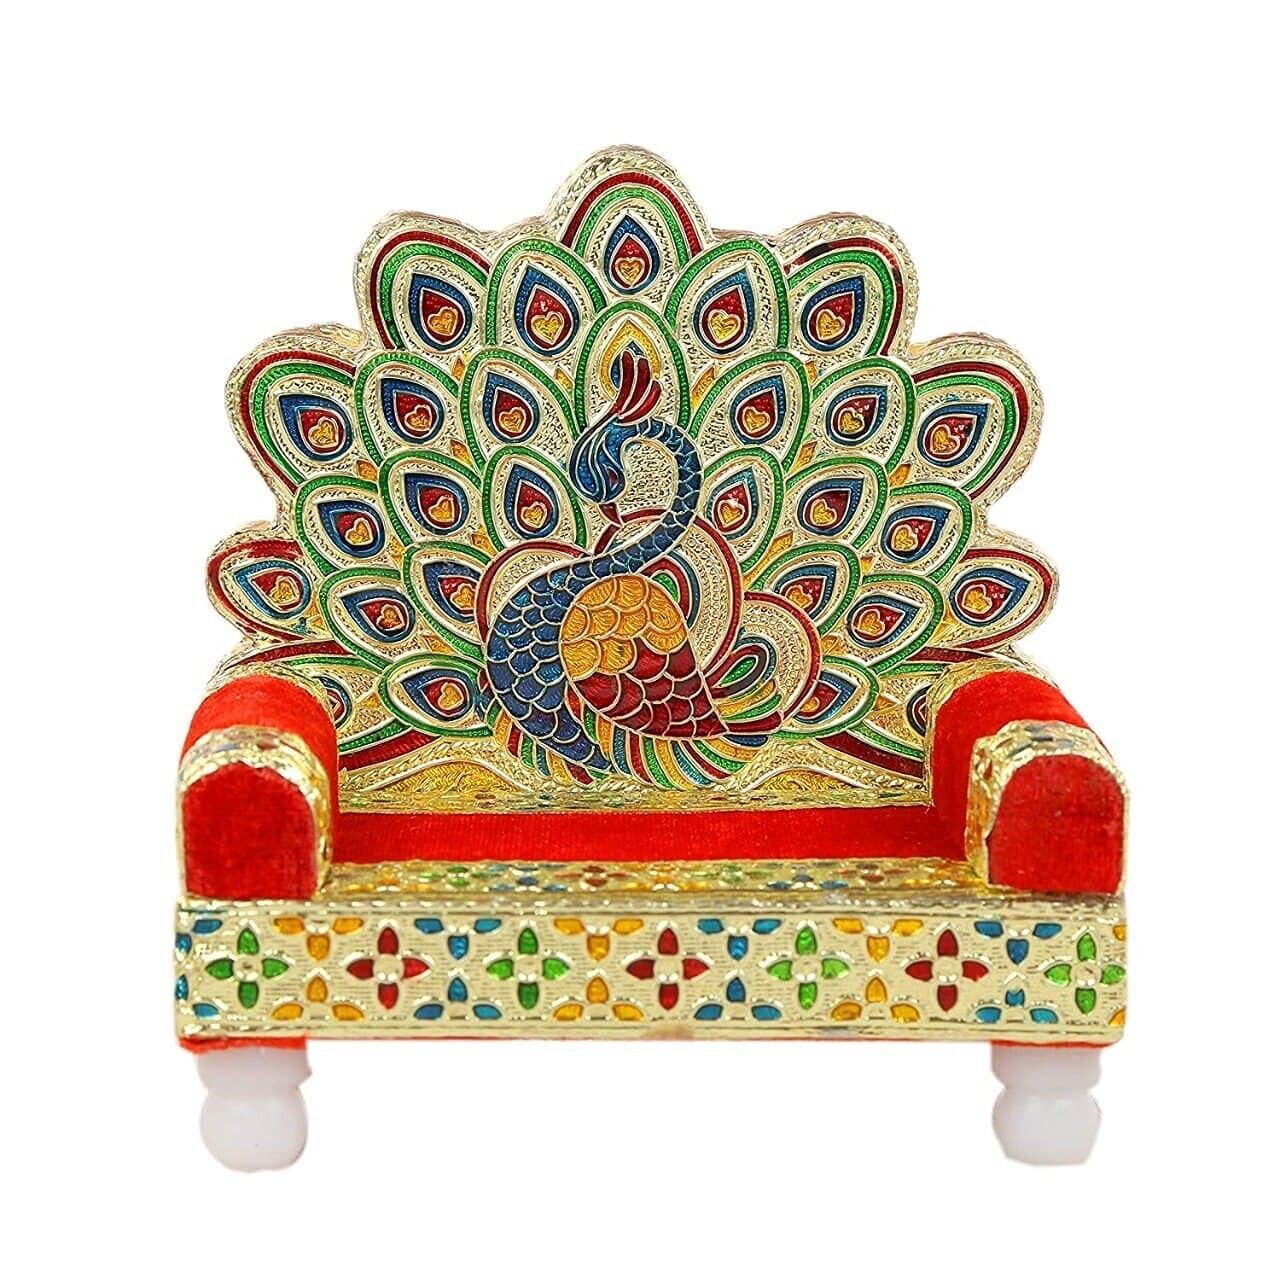 Handcrafted Wooden Laddu Gopal Singhasan Meenakari Peacock Design Divine Pooja